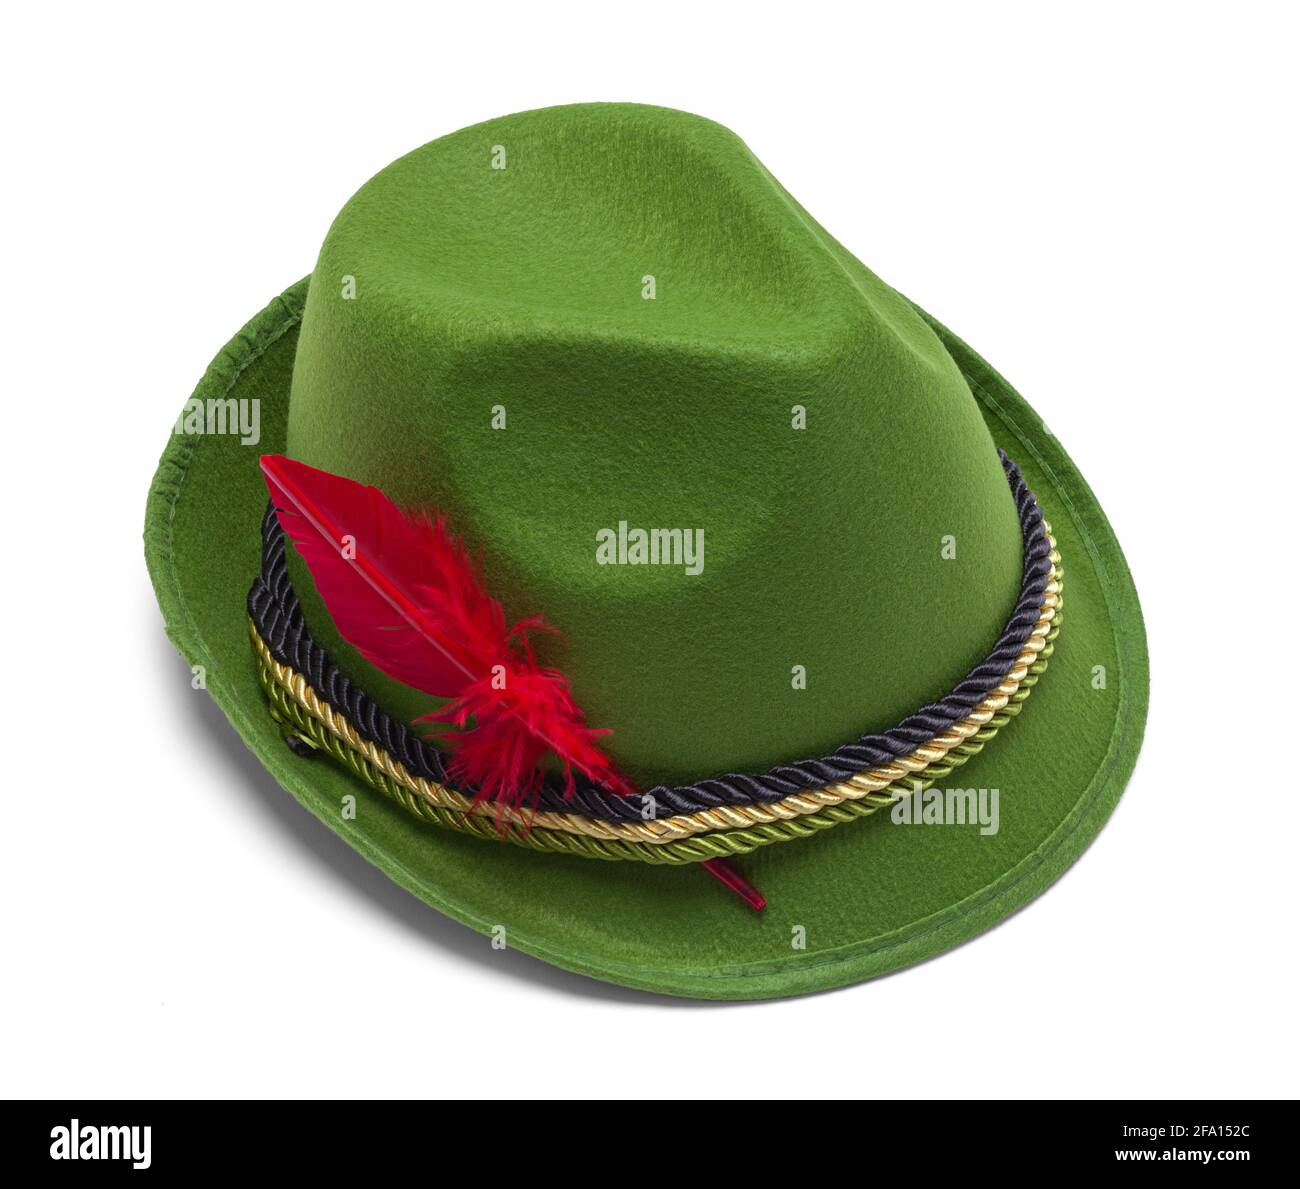 Cappello tirolese immagini e fotografie stock ad alta risoluzione - Alamy